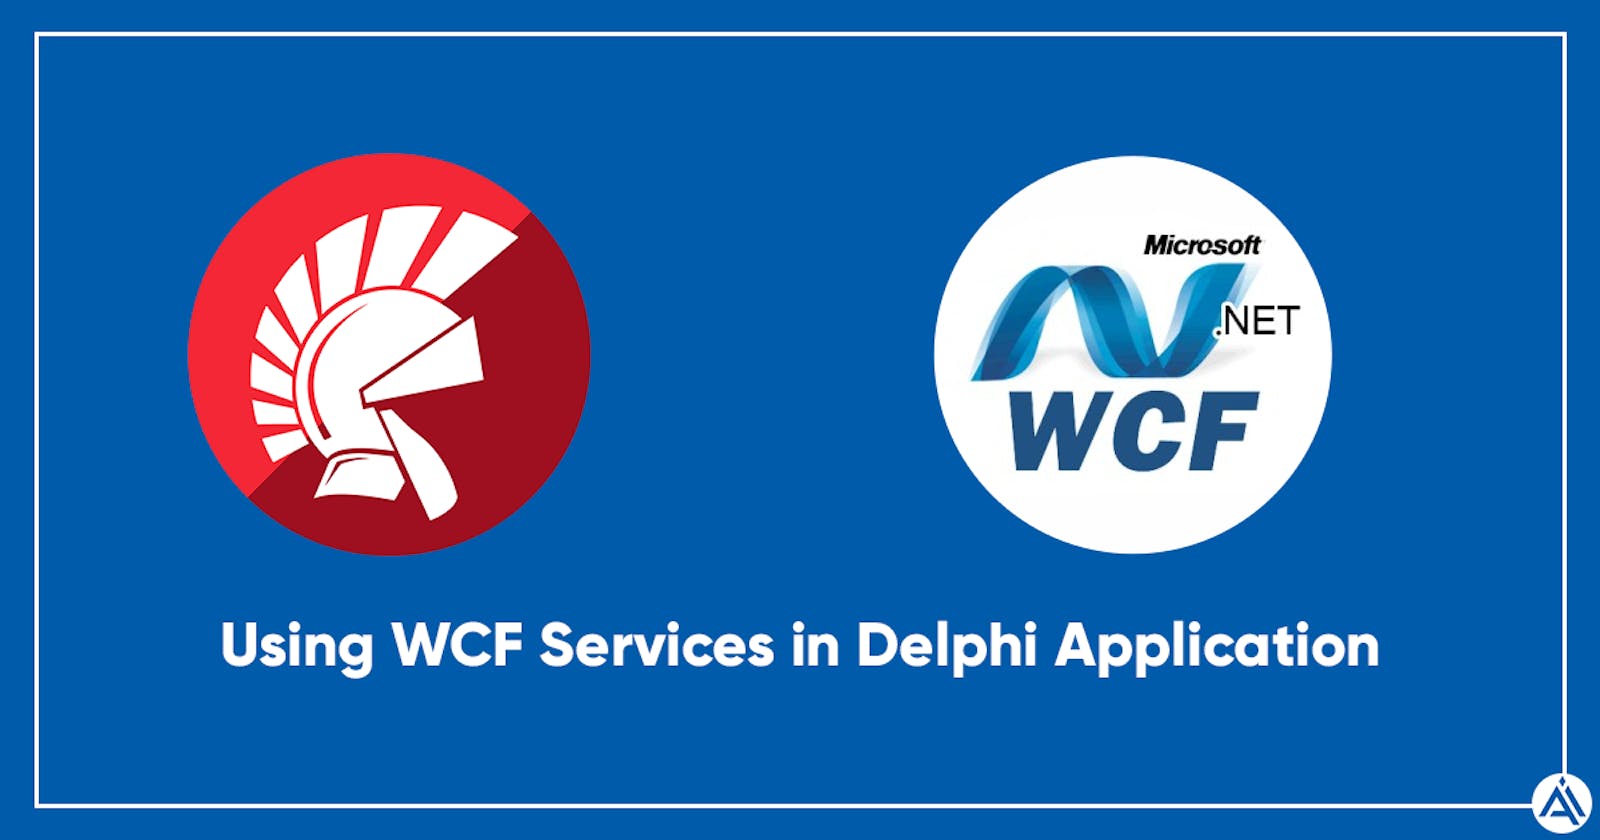 Delphi projesinde WCF servisleri nasıl kullanılır?